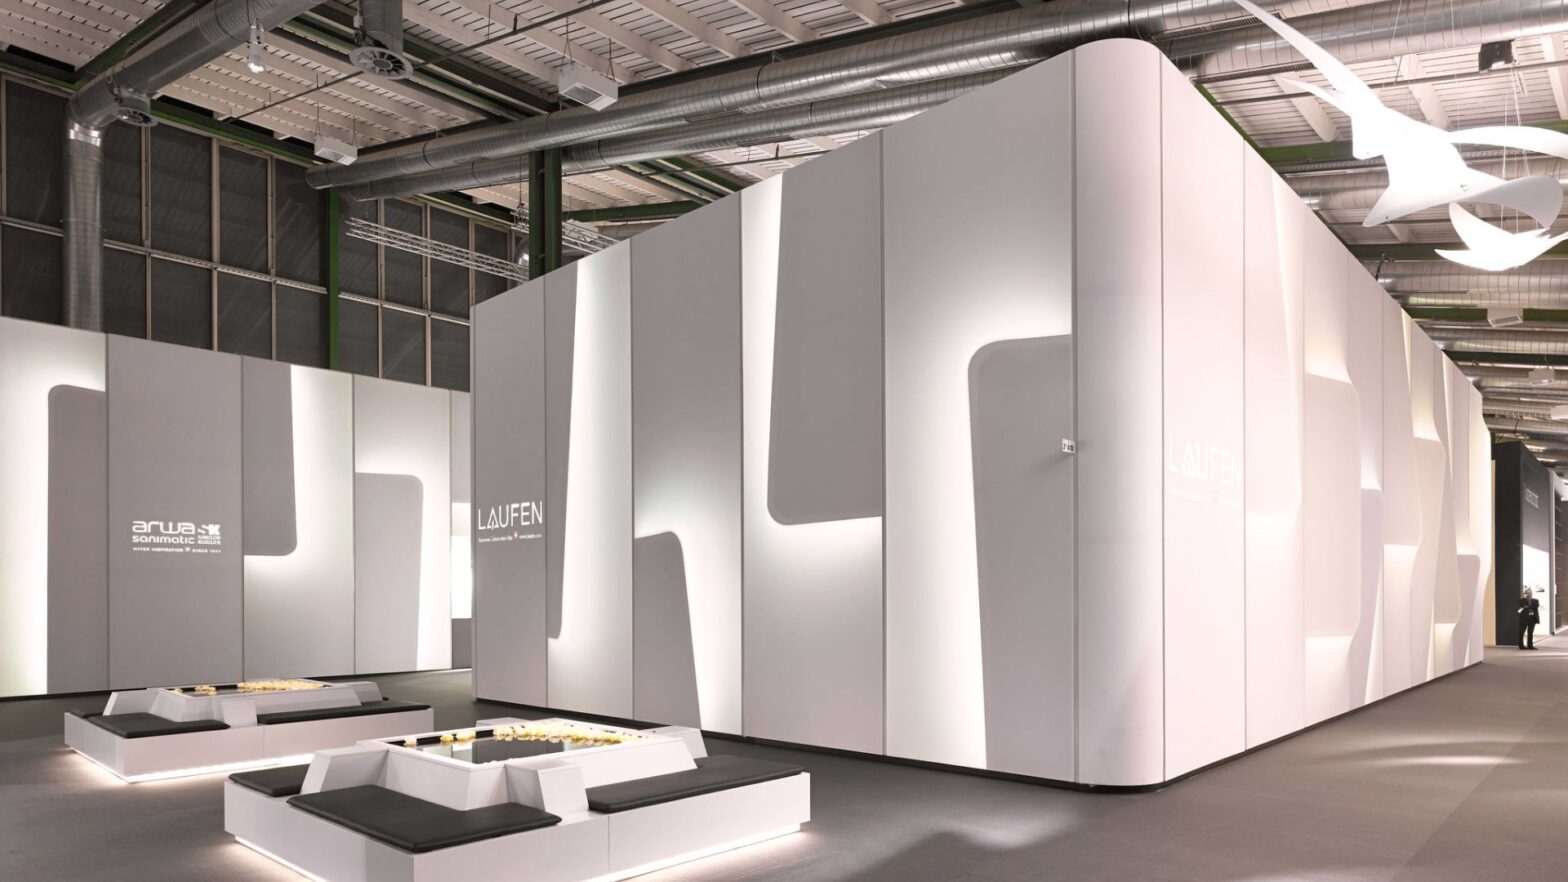 5 Innovative Ideas for Exhibition Stand Design in Dubai